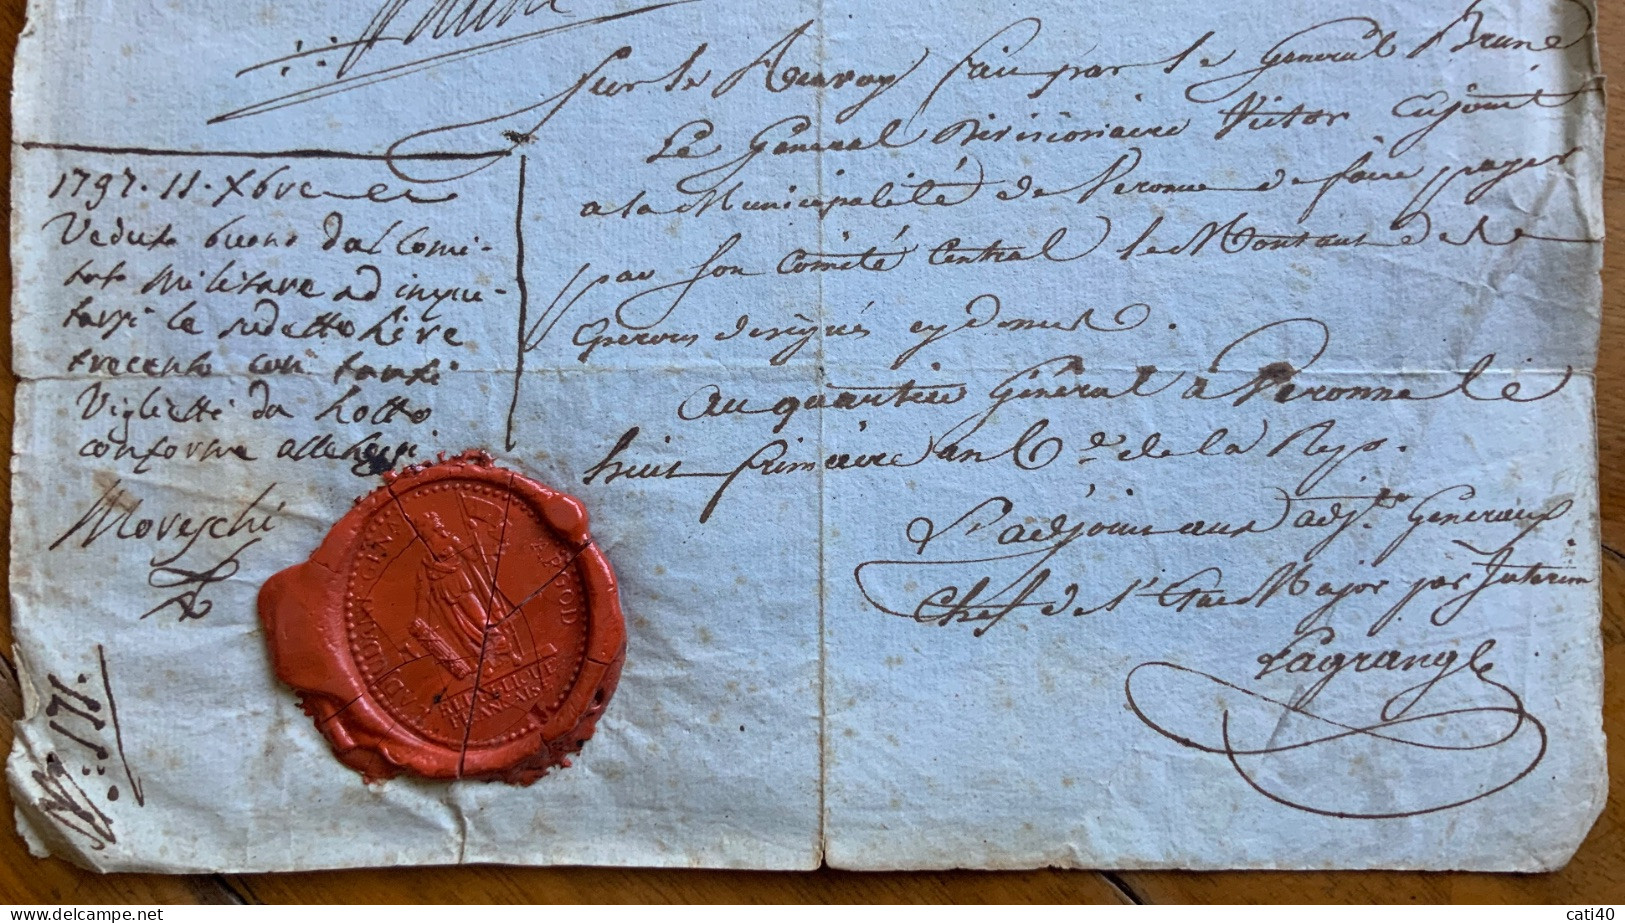 REPUBBLICA FRANCAISE - SIGILLO SU RICEVUTA DI 300 LIRE DE MILAN.. FIRMATA E CONTROFIRMATA L'11 DIC. 1797 - RRR - Documents Historiques